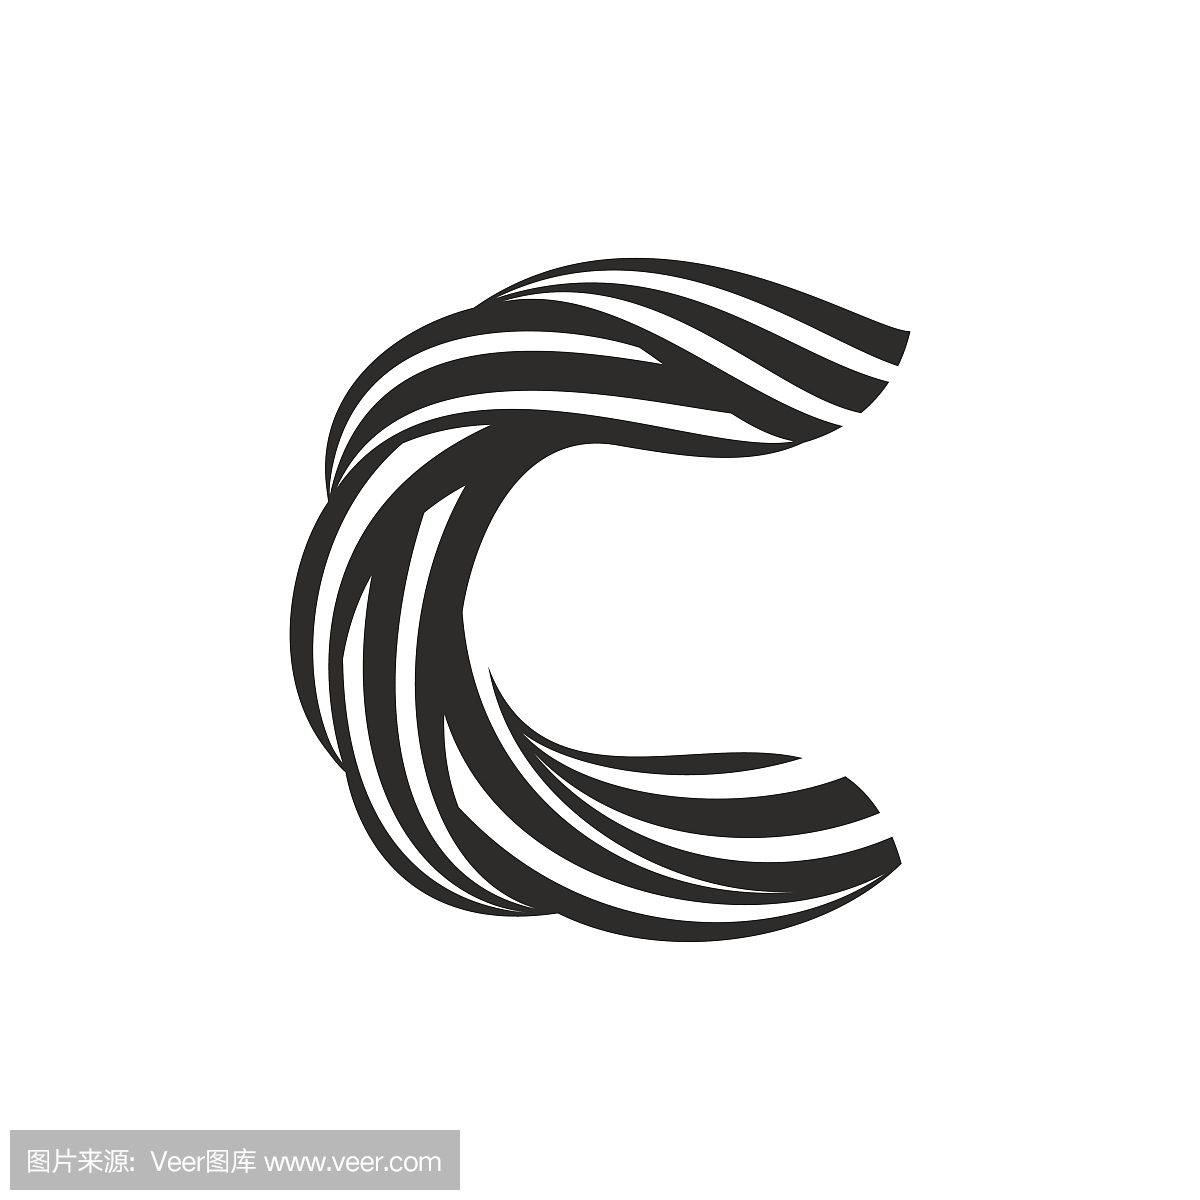 由扭曲线形成的C字母图标。